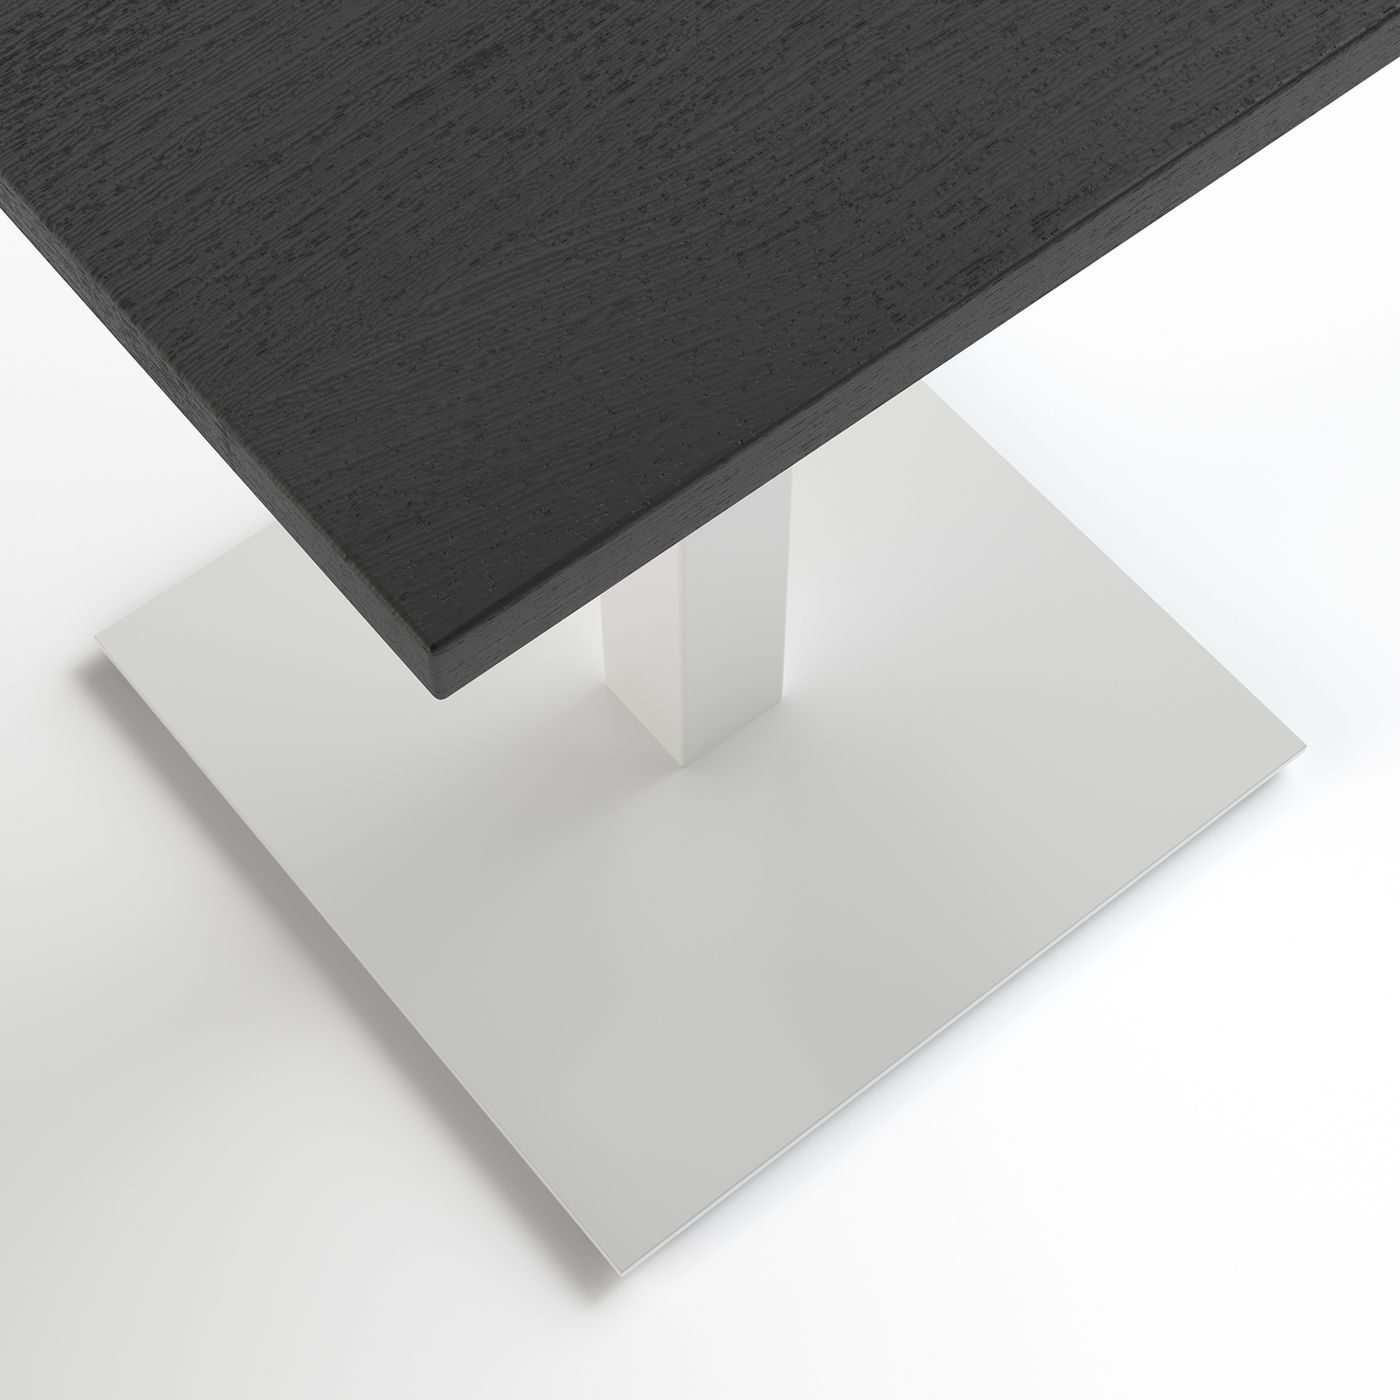 Стол Tetra light 60 х 60 белый металл / чёрное ДСП (текстура)